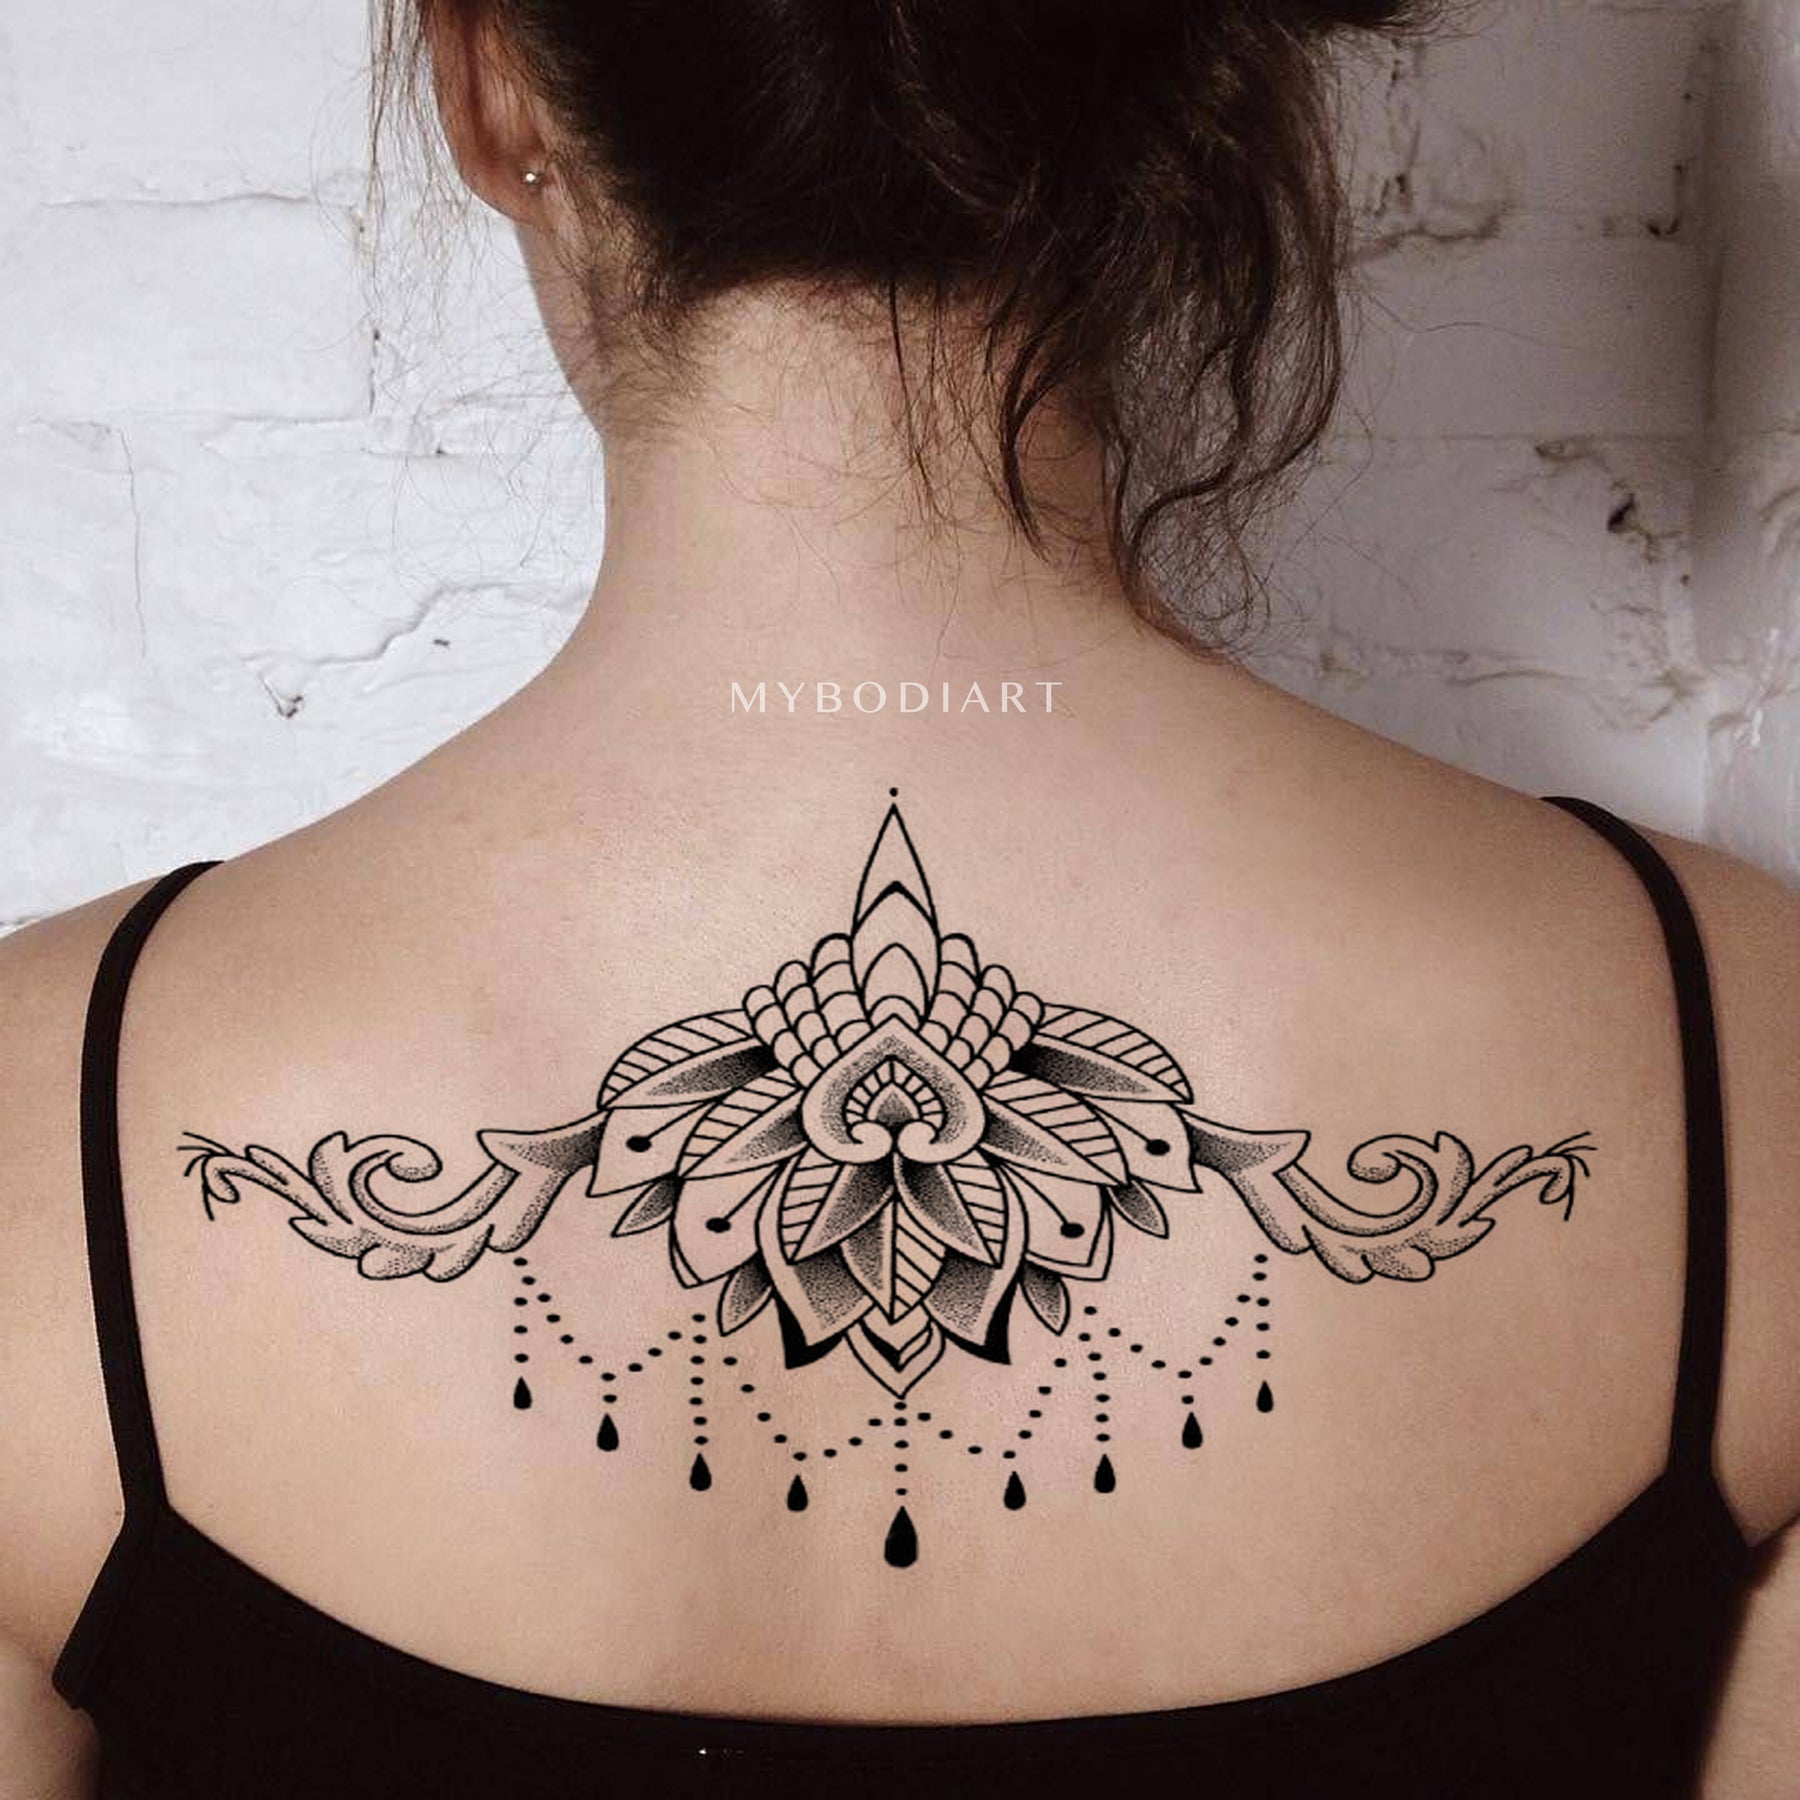 Queen Bee tattoo design by VixyArt on DeviantArt